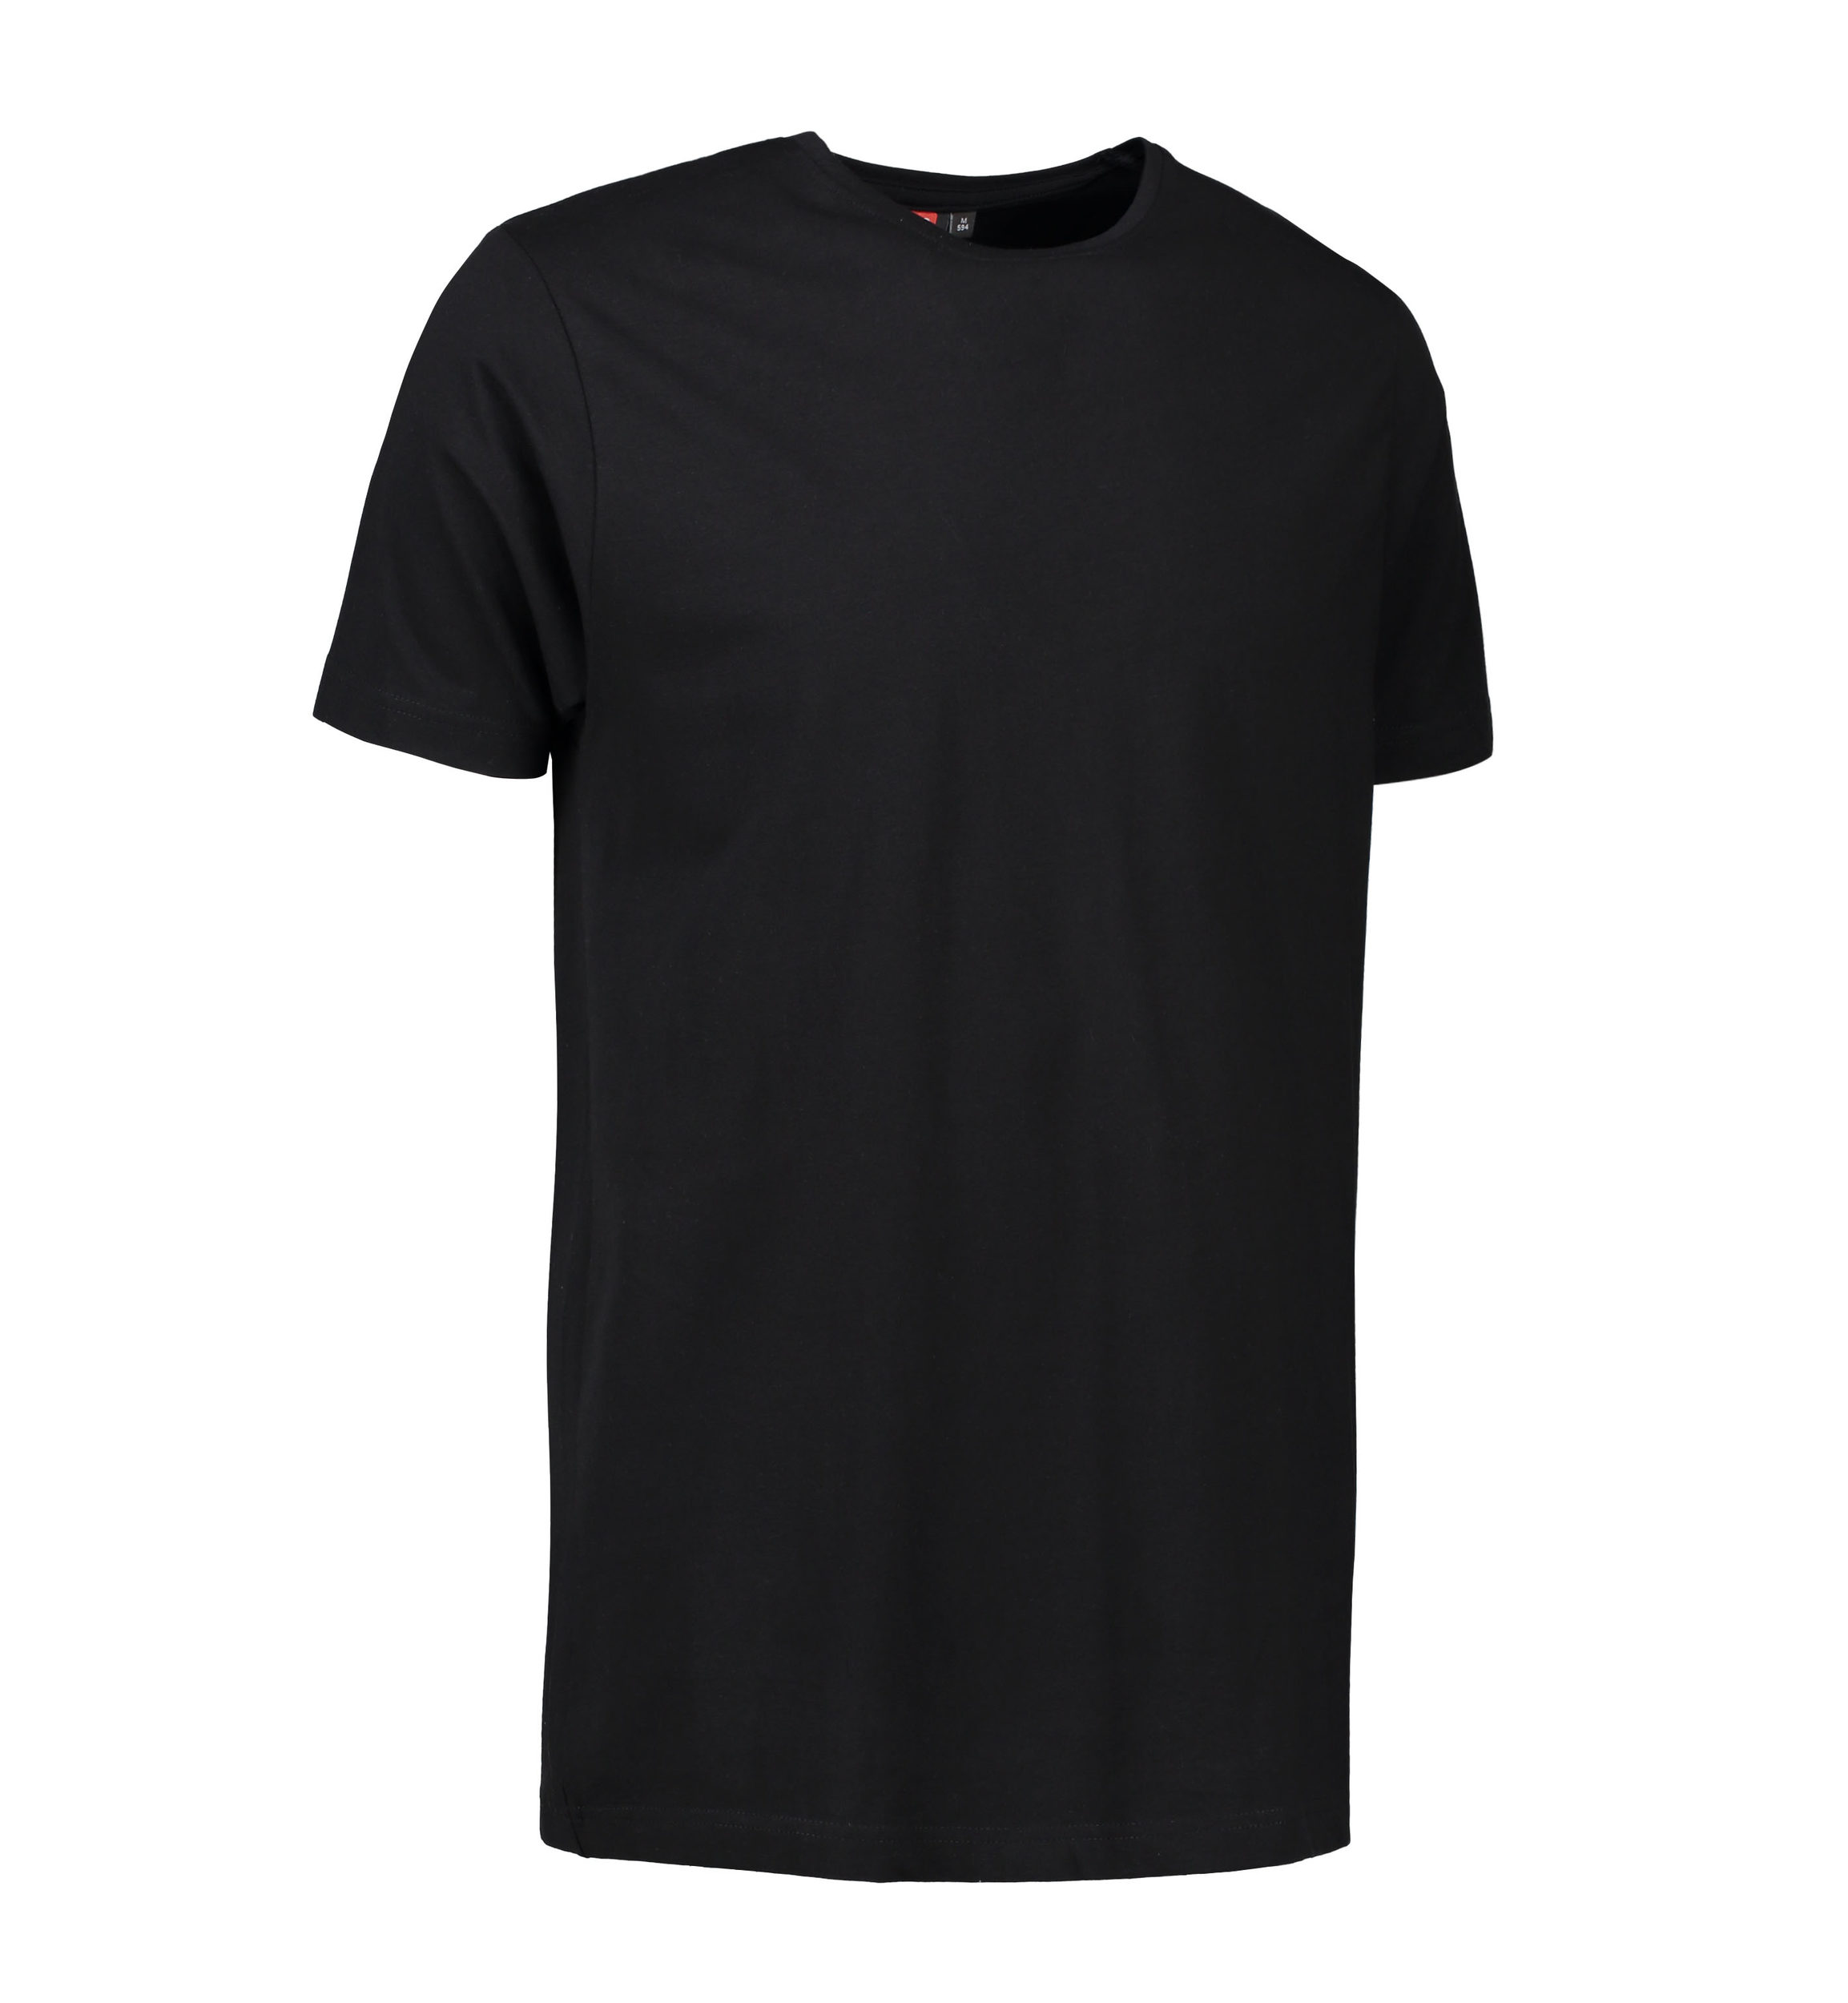 Billede af Stretch t-shirt til mænd i sort - S hos Sygeplejebutikken.dk